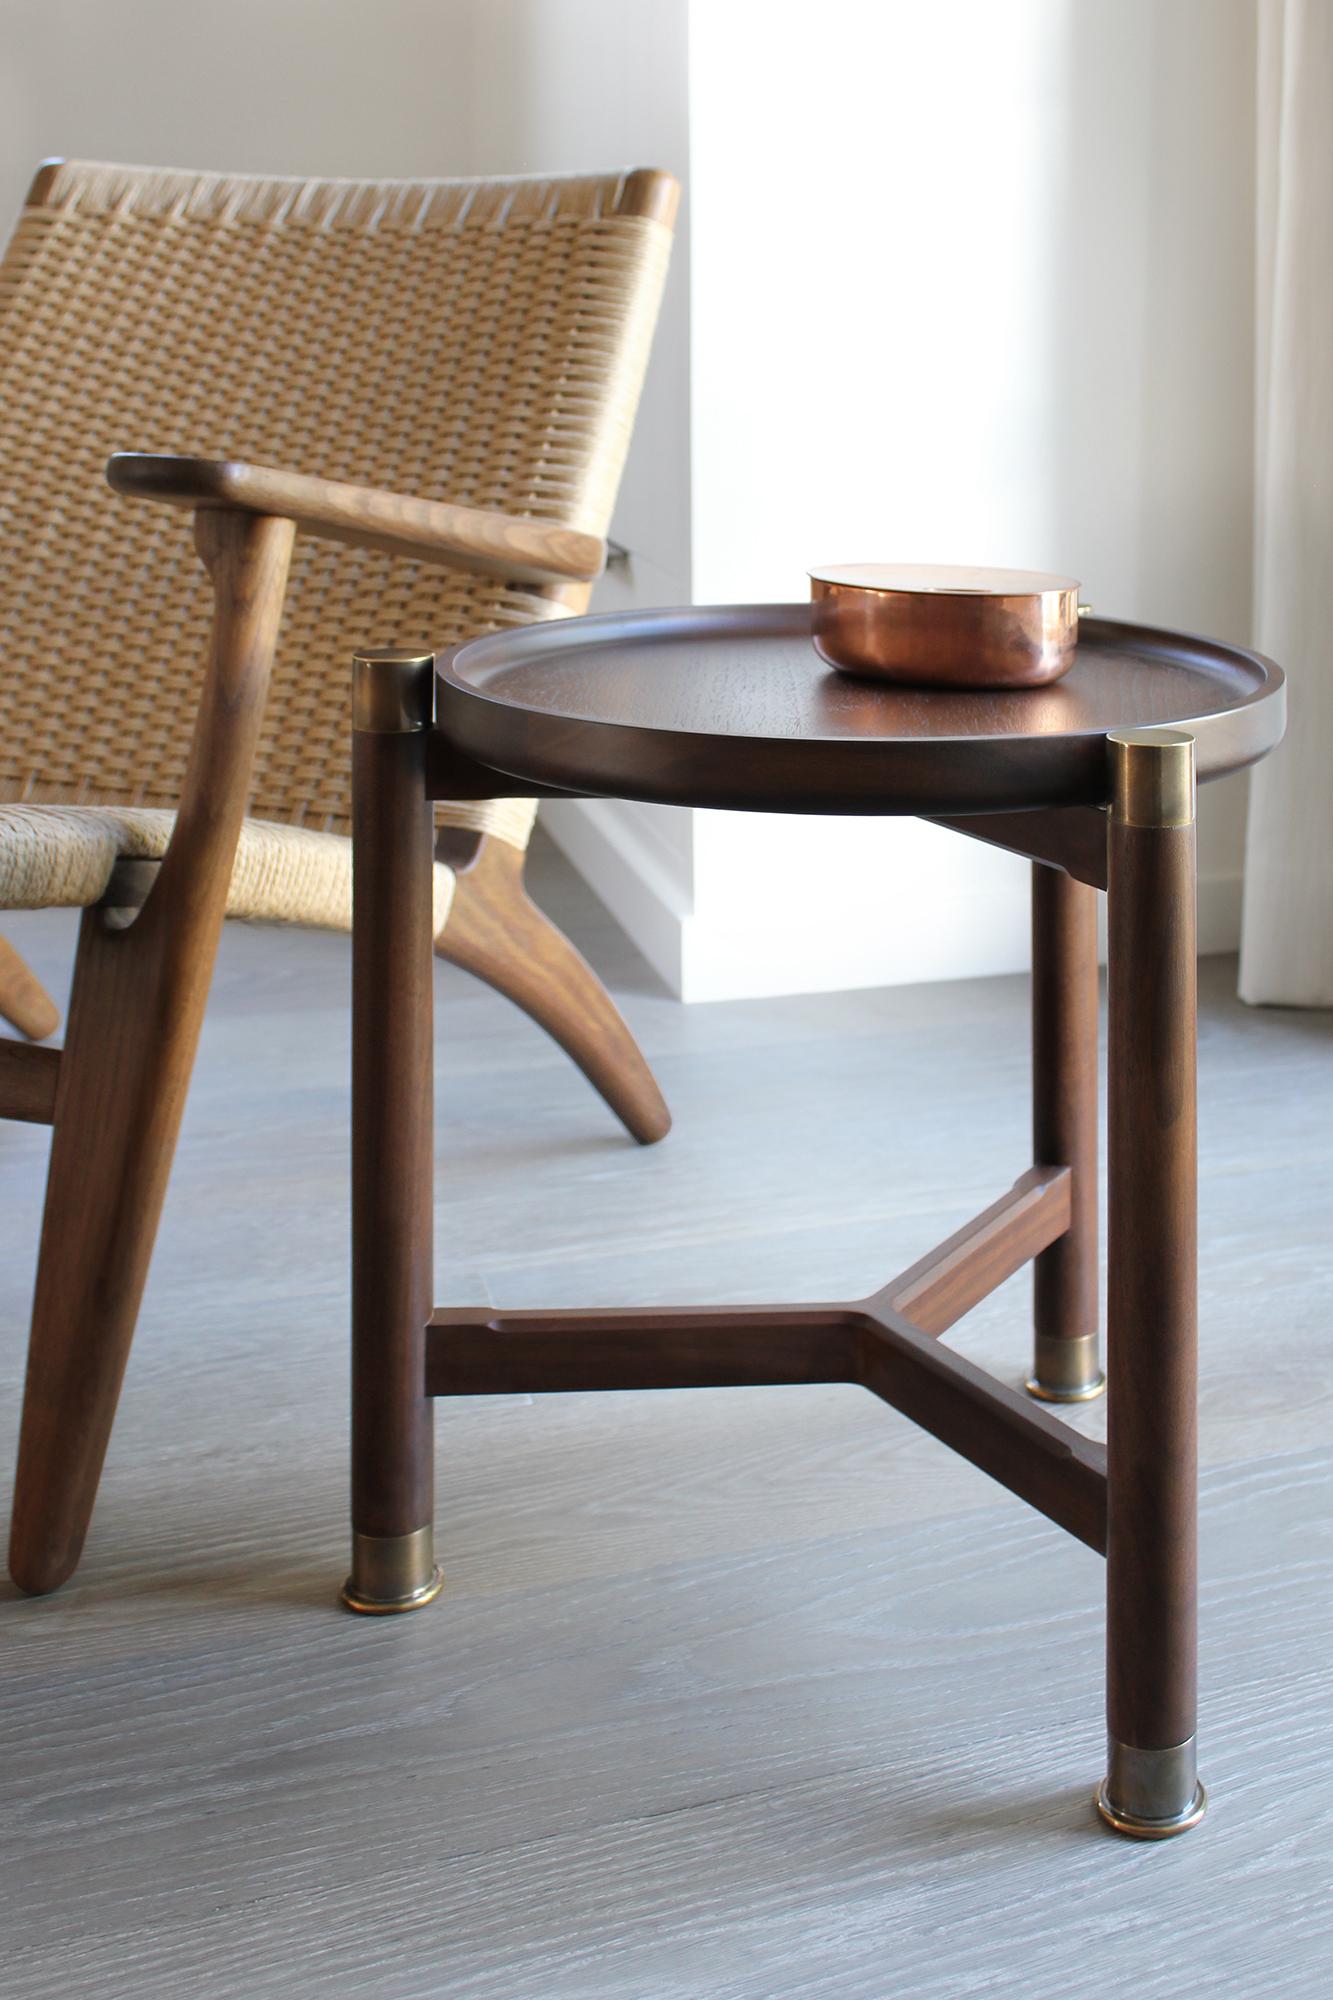 Der Akzenttisch Otto ist ein kleiner Tisch mit einer klassischen, einfachen Form. 
Er ist in Nussbaum oder Eiche erhältlich und zeichnet sich durch eine runde Kuppelplatte, umfangreiche Beschläge aus antikem Messing und schlanke, abgeschrägte